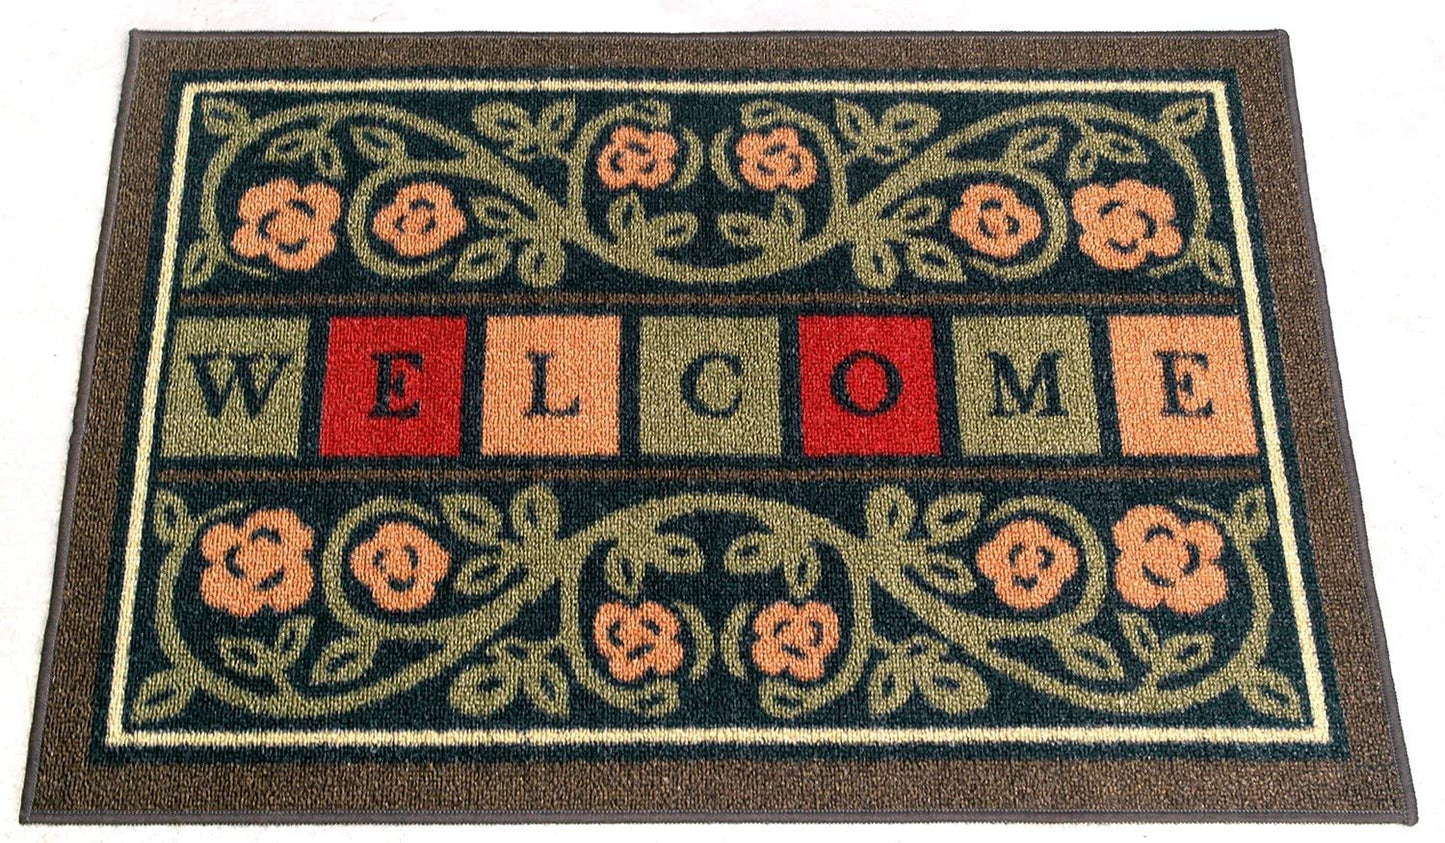 Doormat, 20" X 30", Welcome